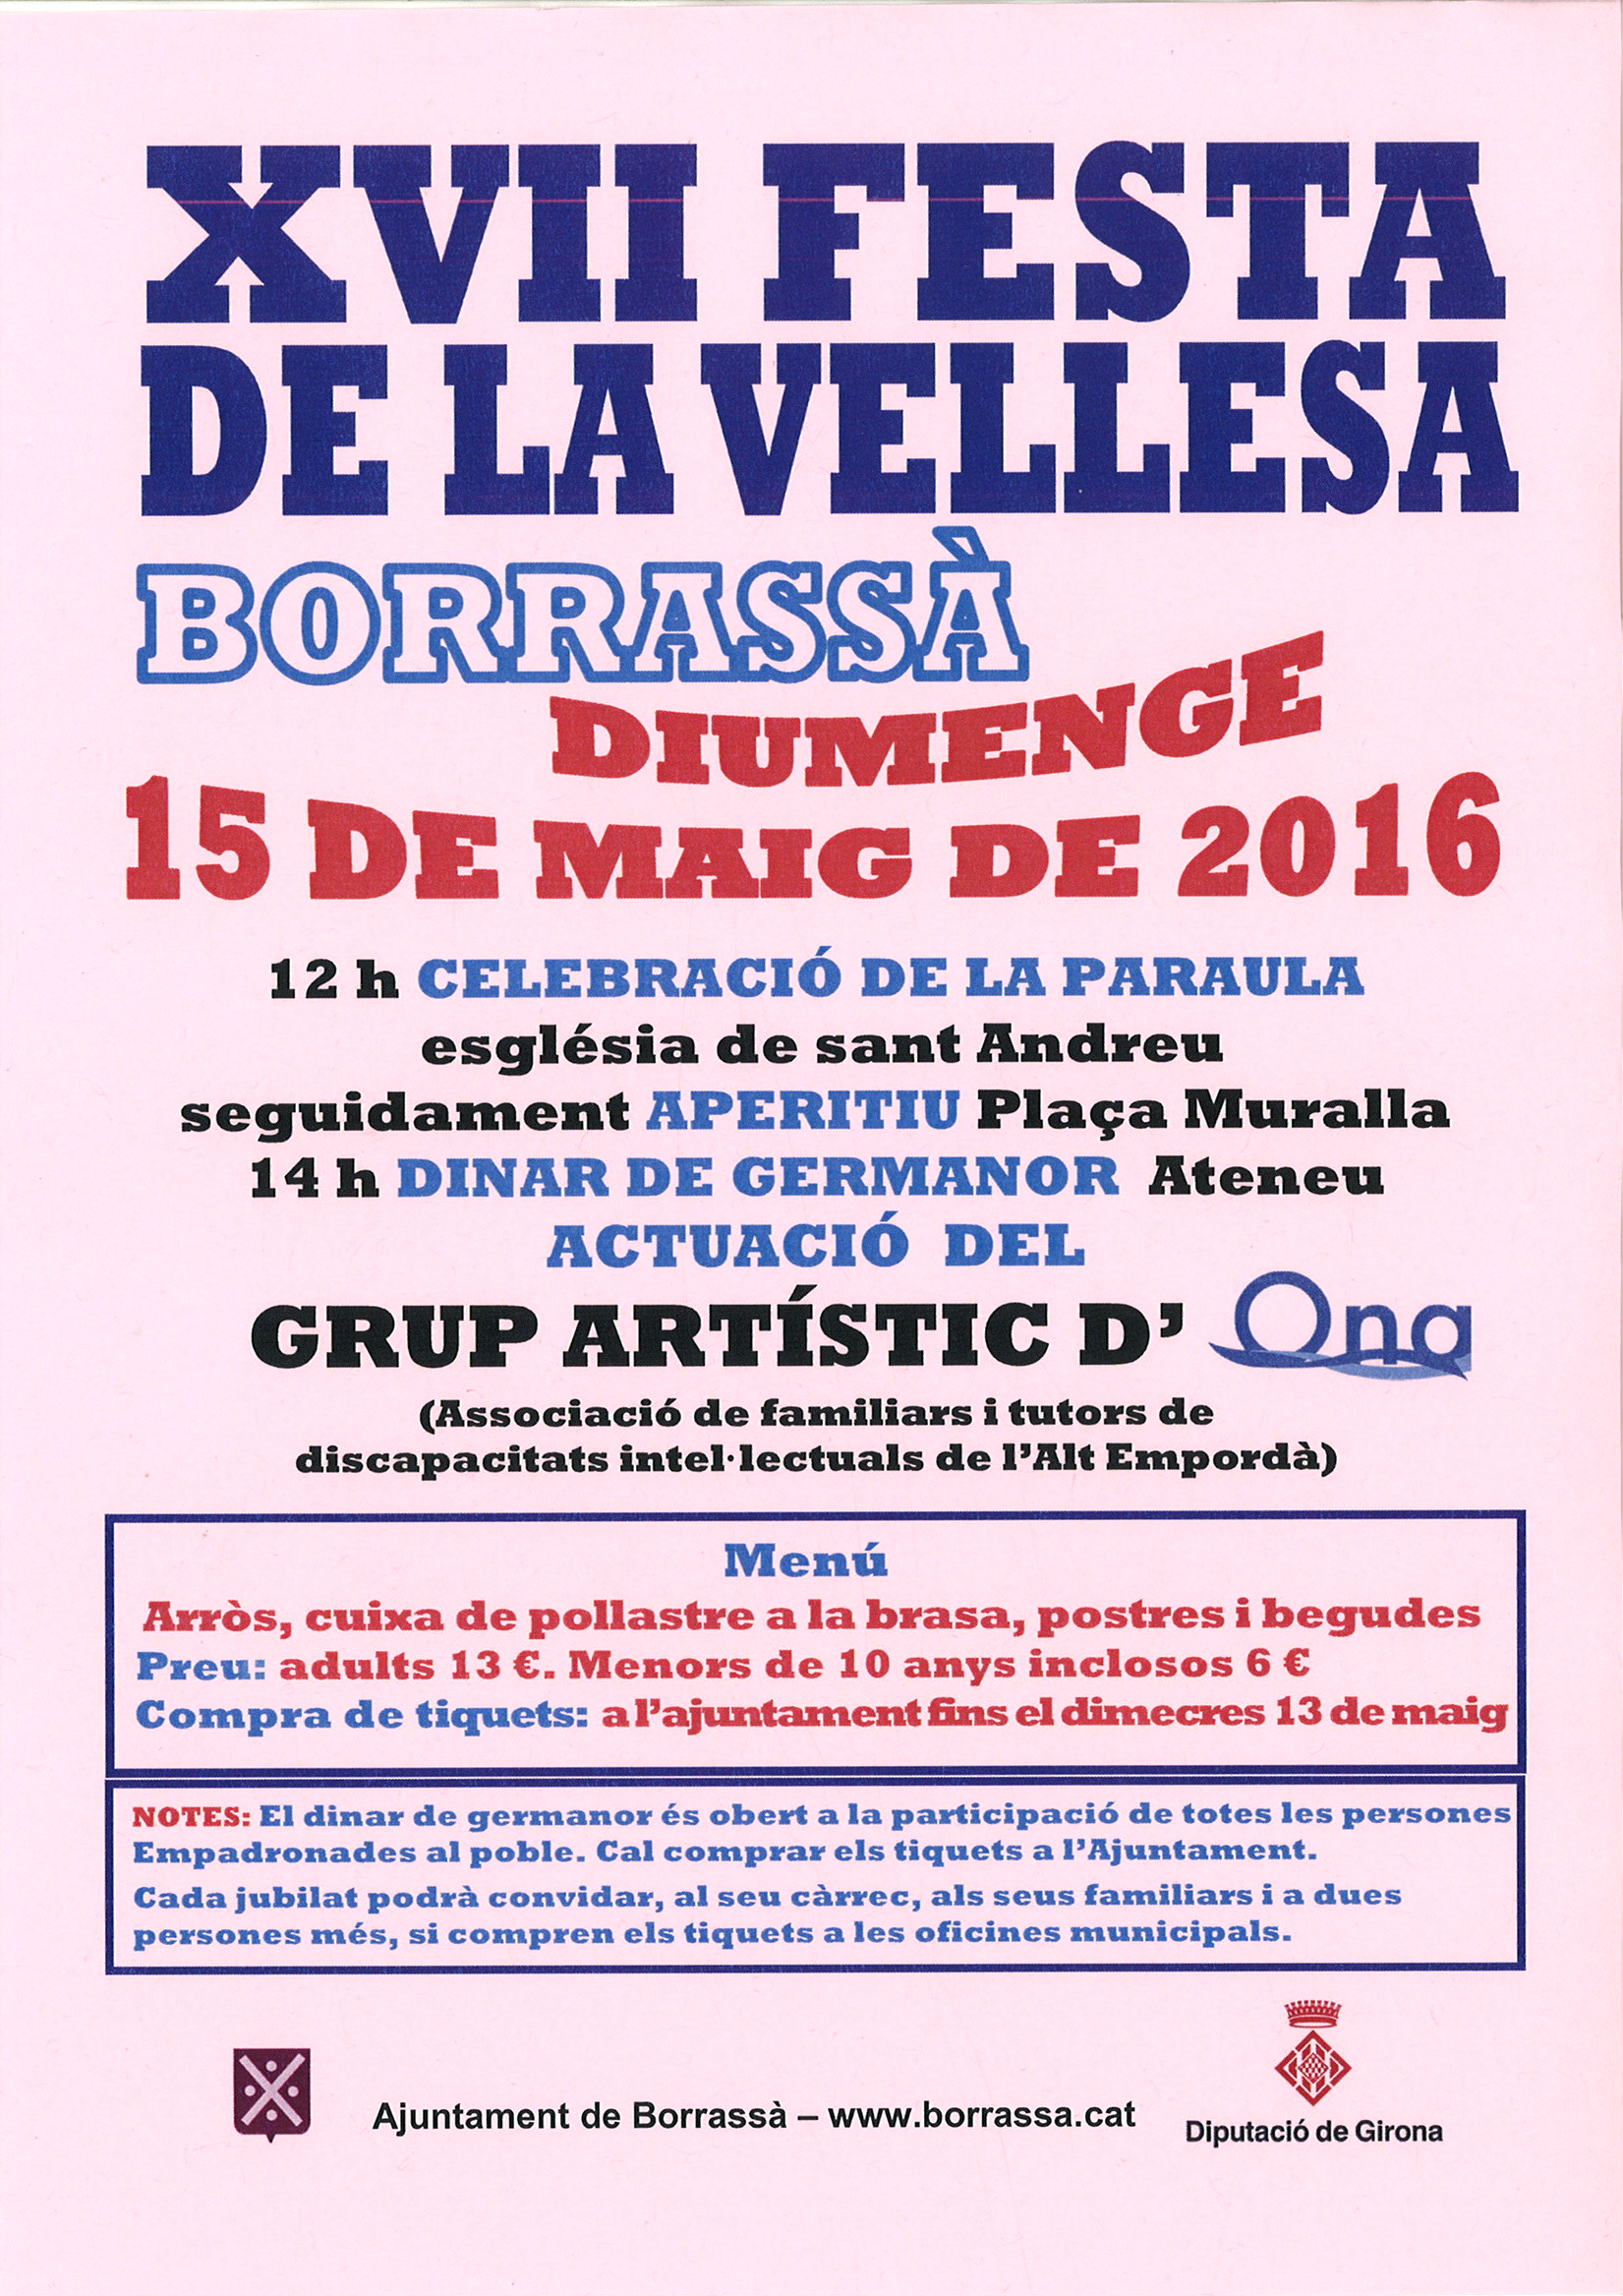 L'Ateneu de Borrassà reunirà gairebé 400 persones per celebrar la XVII Festa de la Vellesa, l'homenatge anual a la gent més gran del poble.